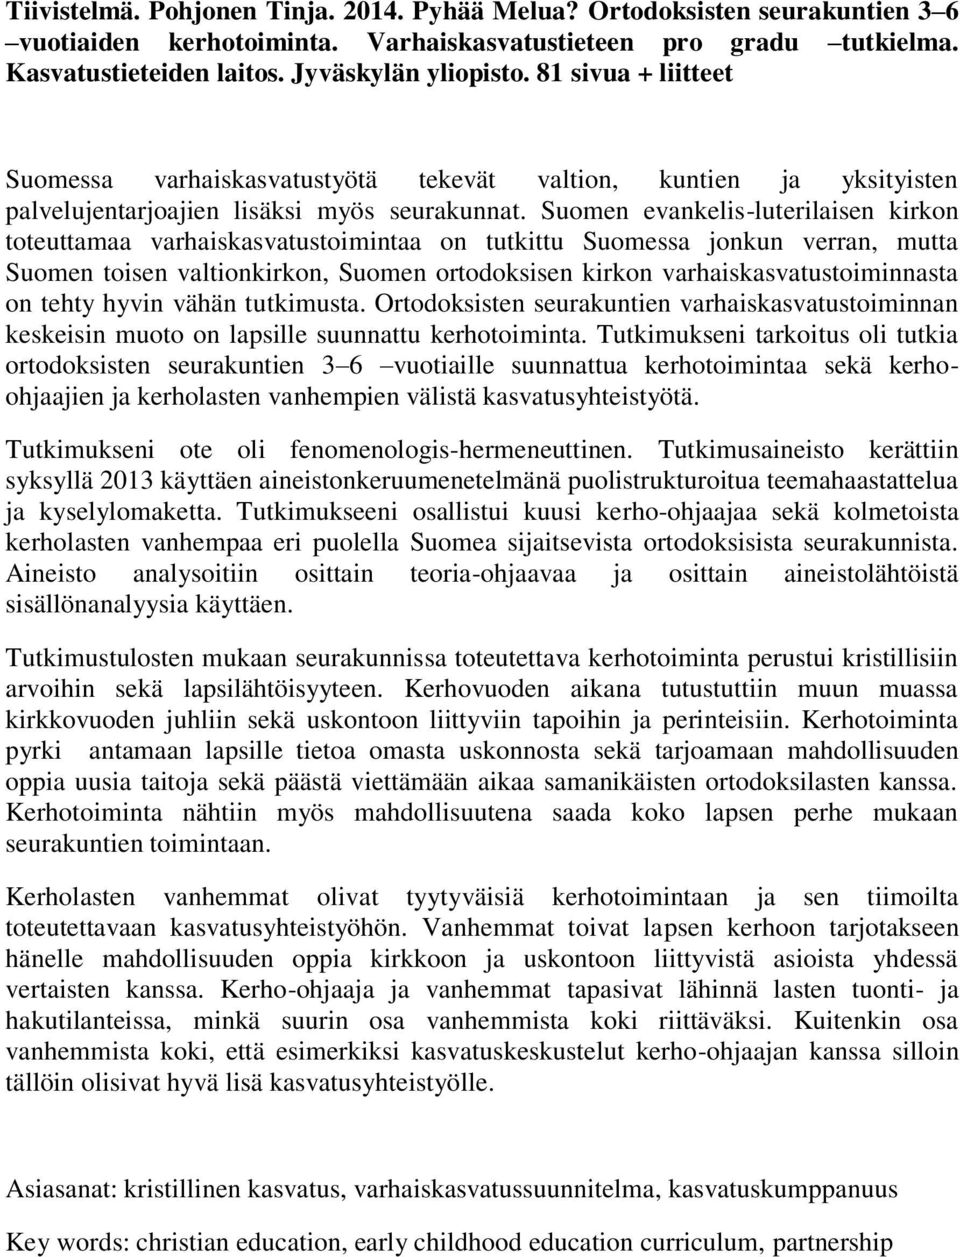 Suomen evankelis-luterilaisen kirkon toteuttamaa varhaiskasvatustoimintaa on tutkittu Suomessa jonkun verran, mutta Suomen toisen valtionkirkon, Suomen ortodoksisen kirkon varhaiskasvatustoiminnasta